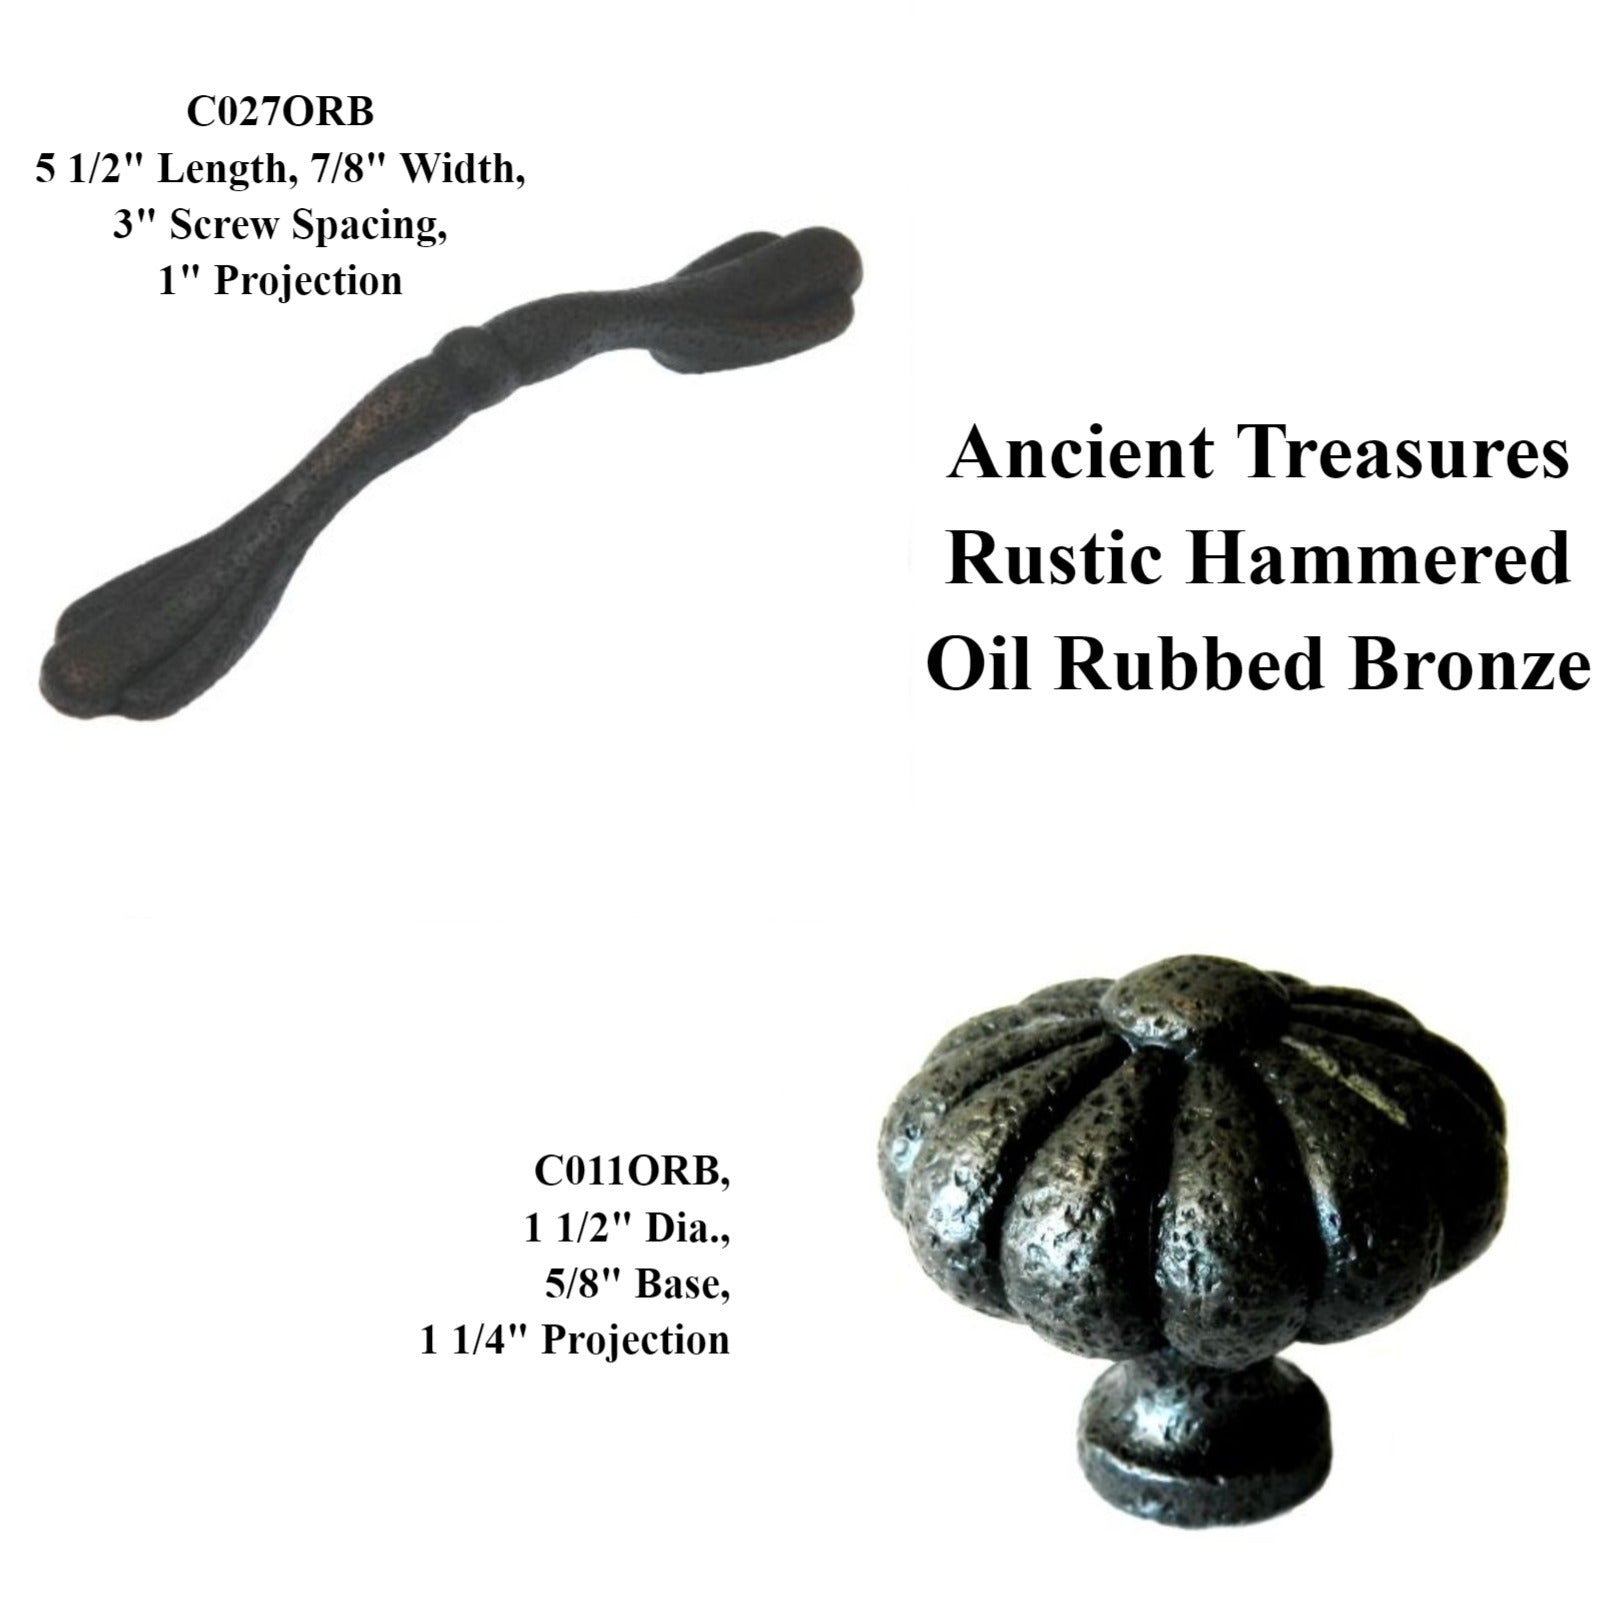 Paquete de 20 tesoros antiguos rústico martillado C027ORB bronce aceitado 3 "cc tirador de arco